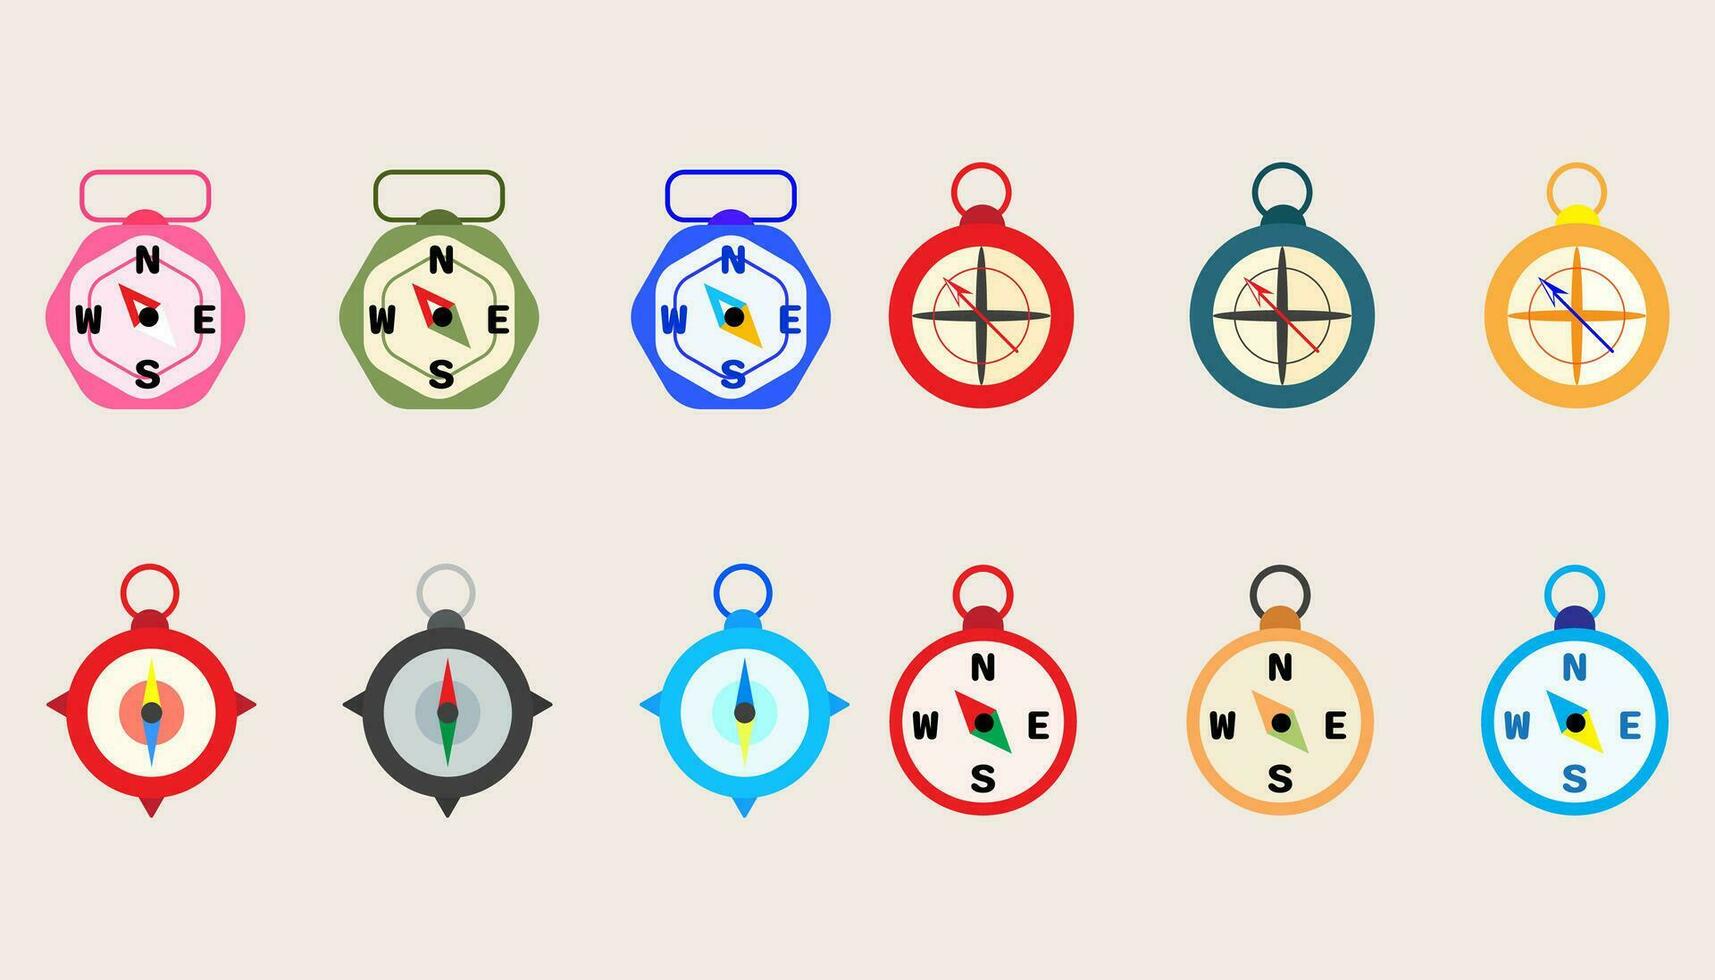 Sammlung Kompass Werkzeug, Navigation Gerät.Kompass Objekt zum Navigation und Orientierung.set von Kompass. vektor